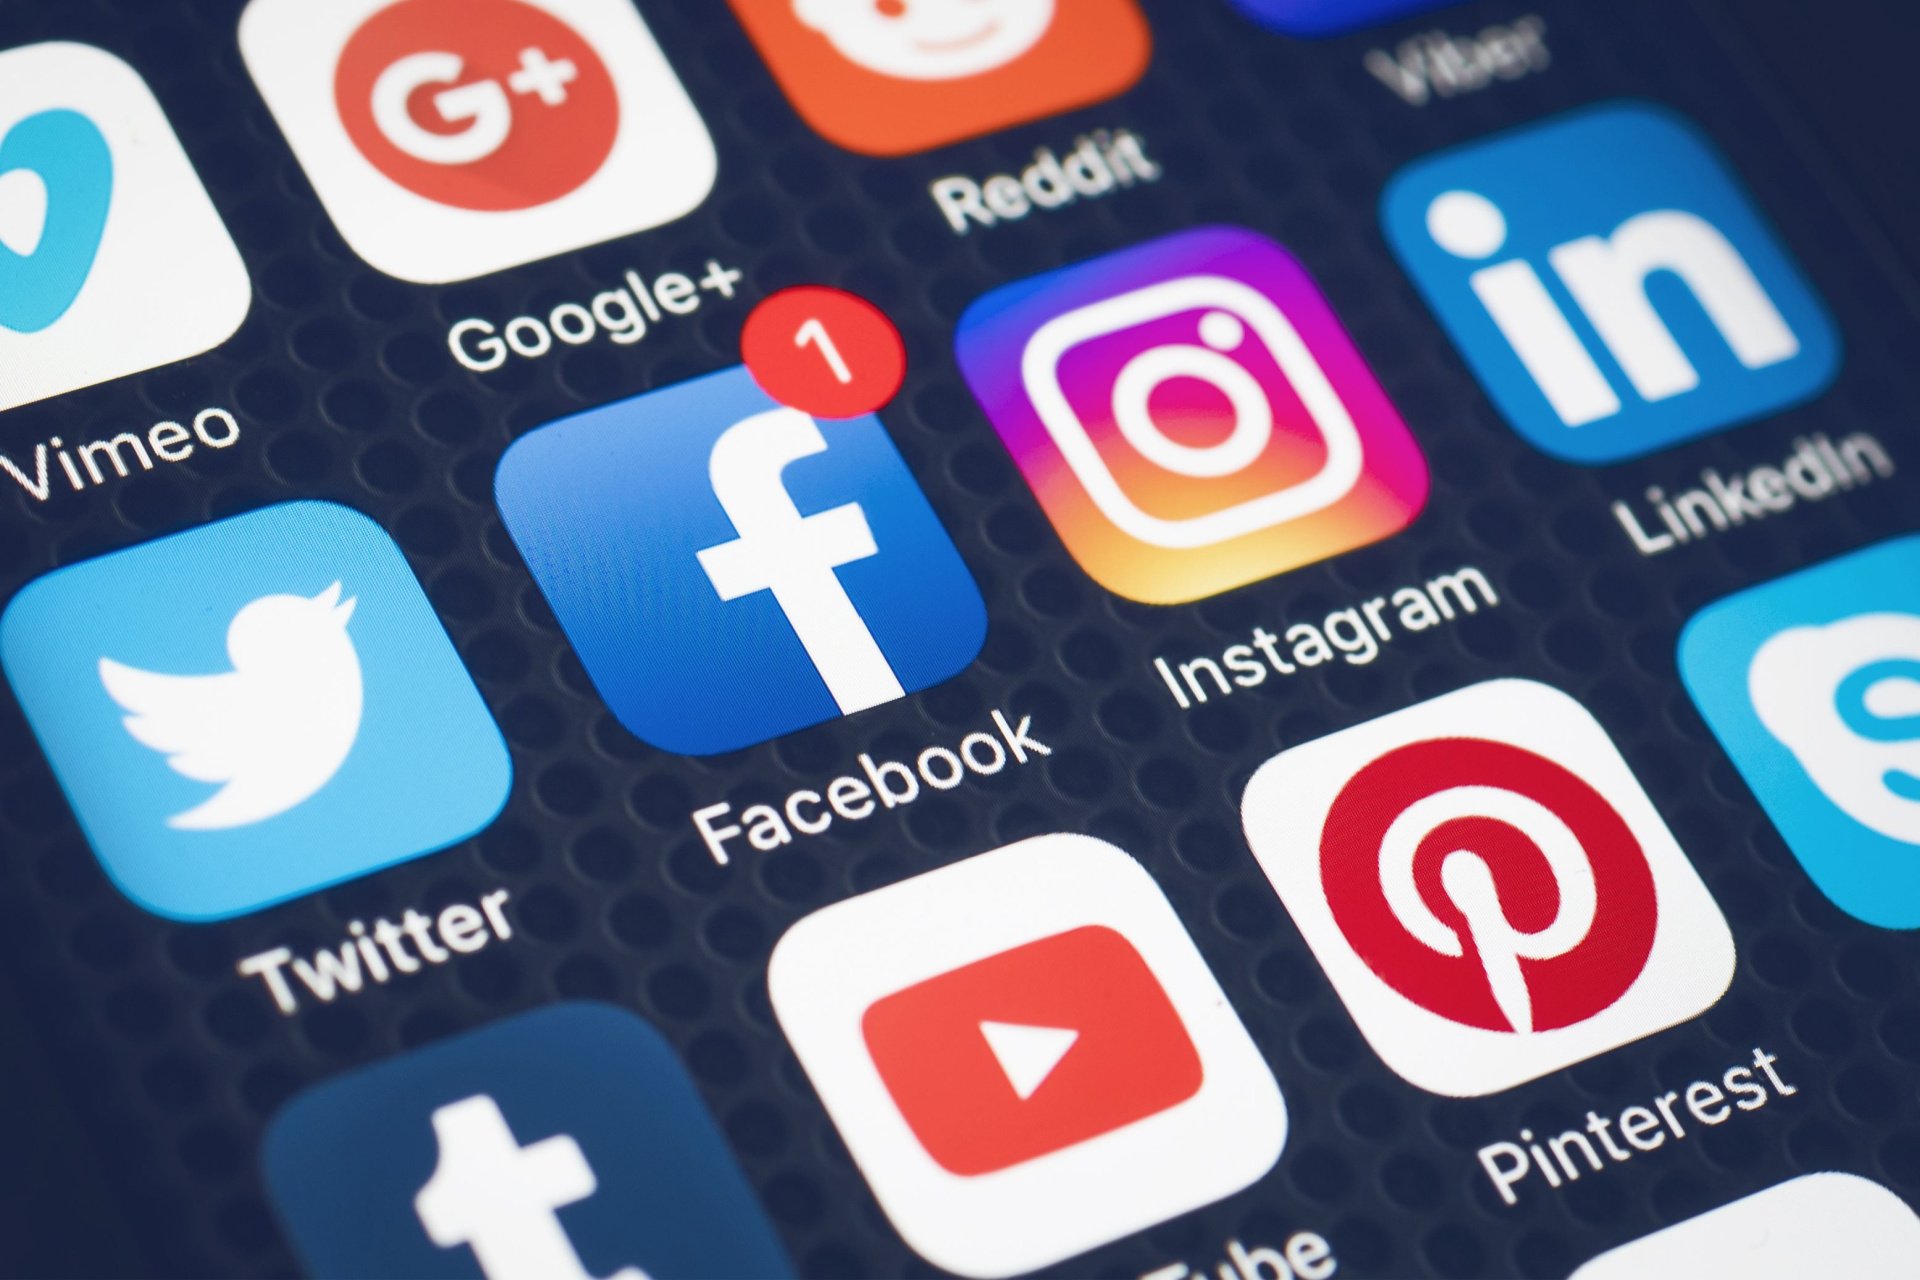 An array of social media app icons